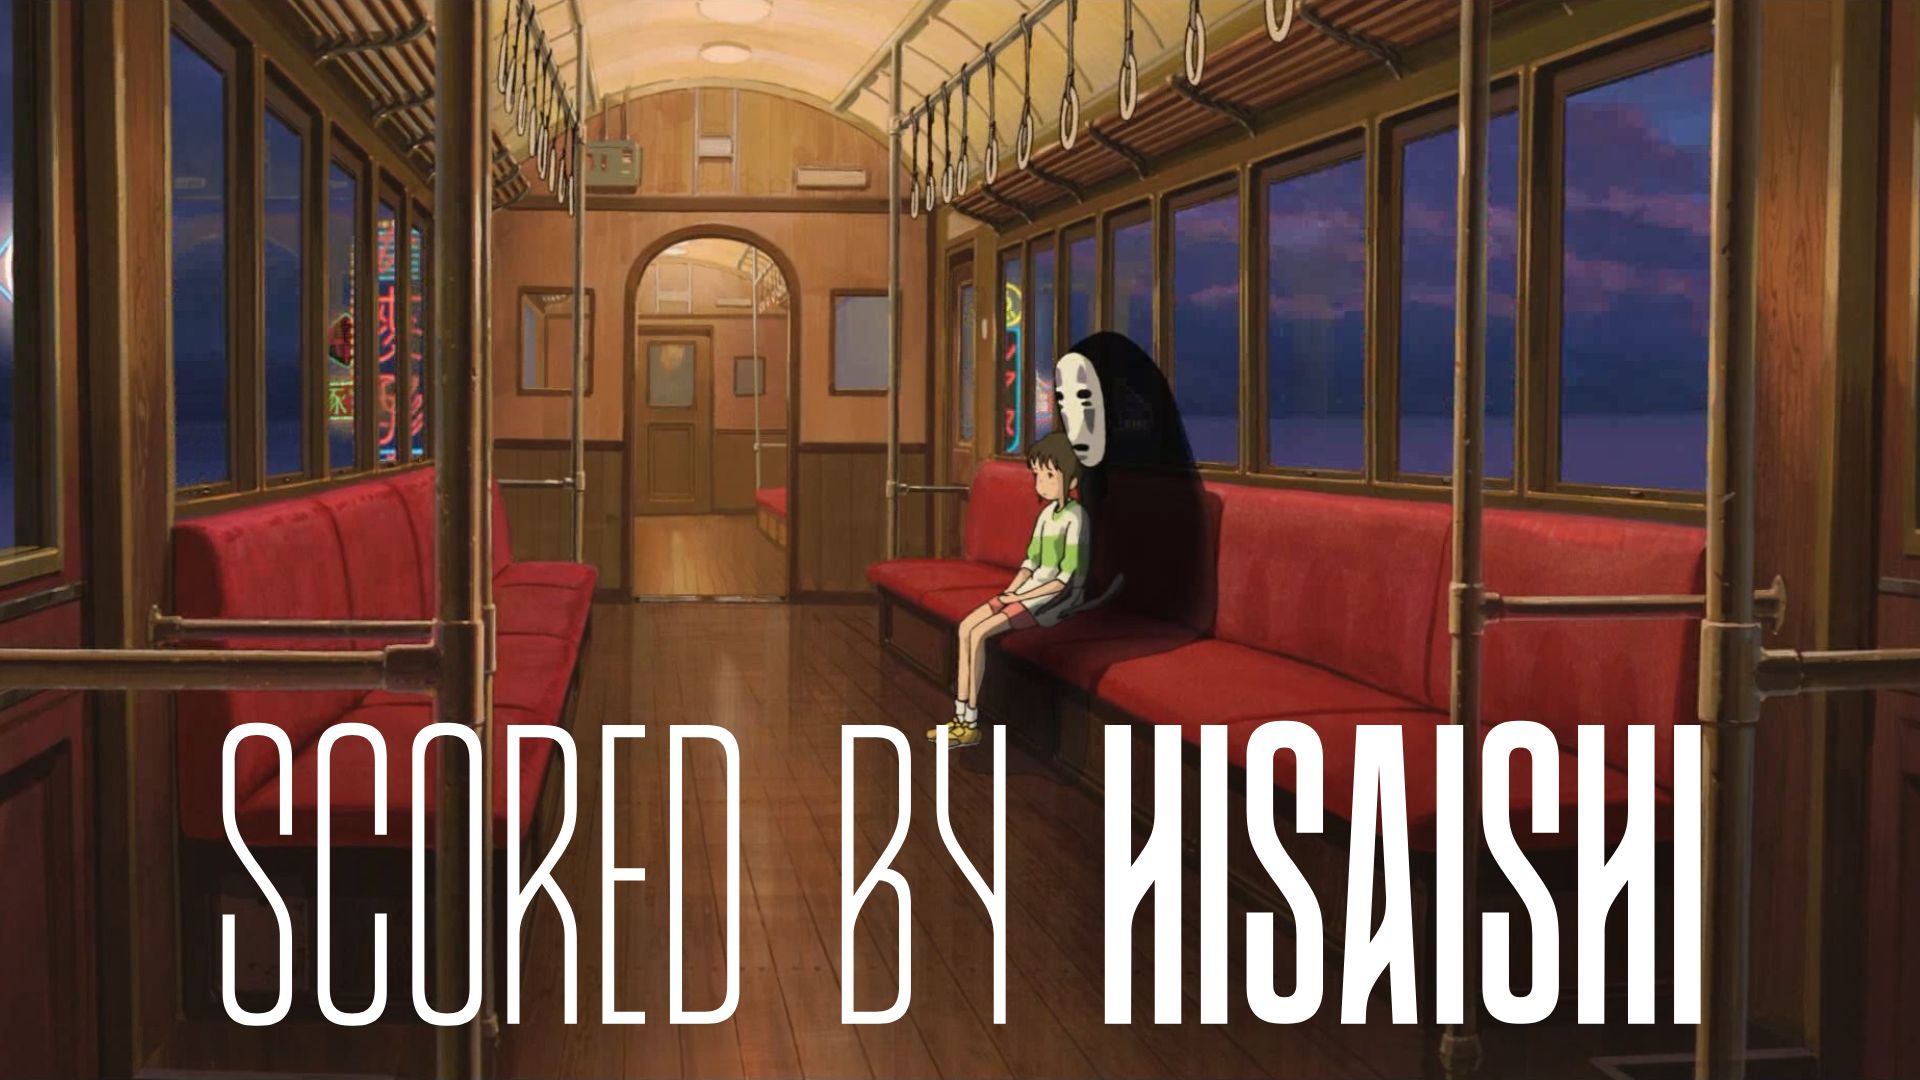 Scored by Hisaishi